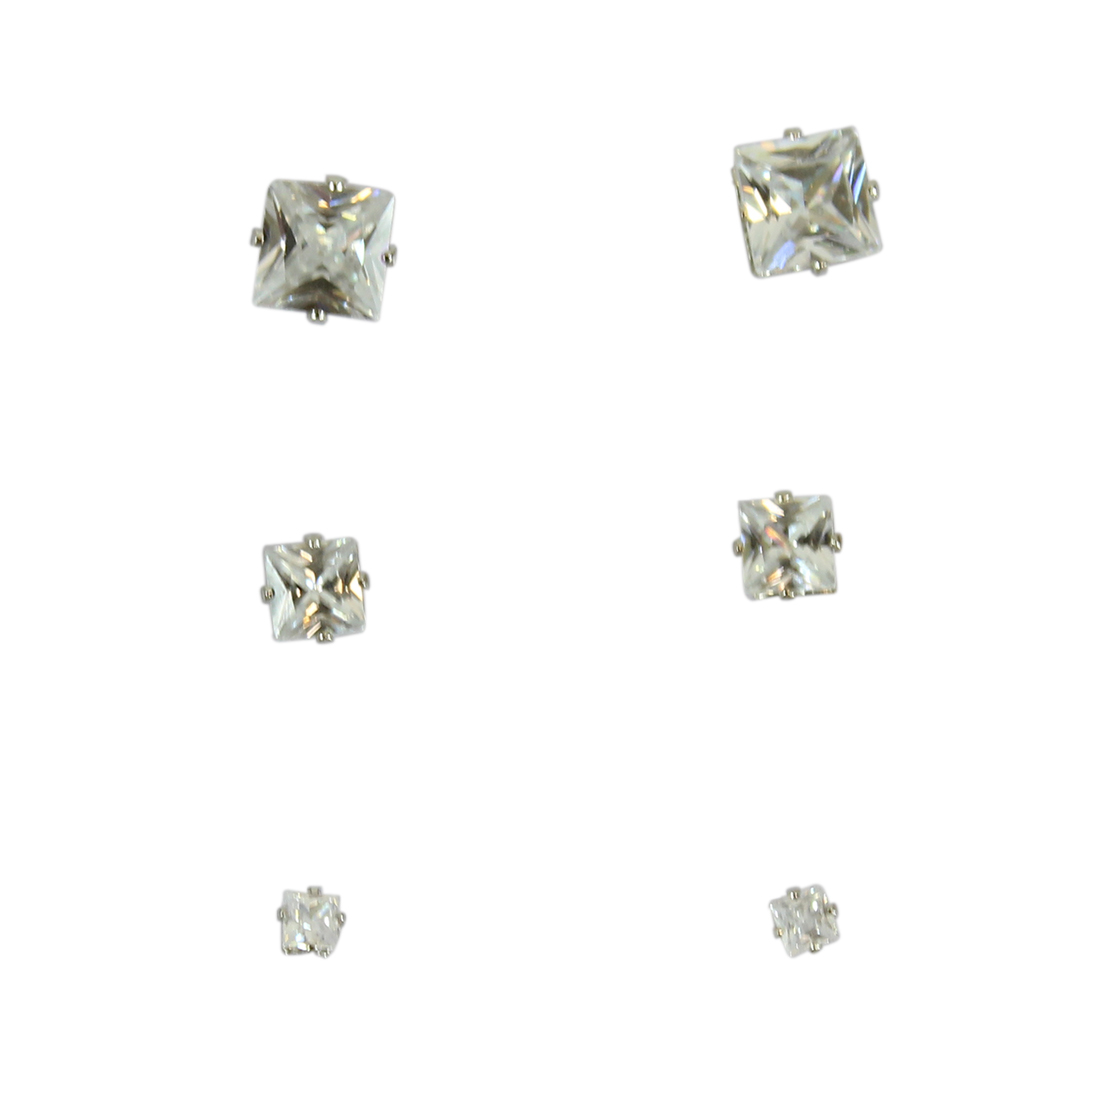 Three pairs of Diamond Style